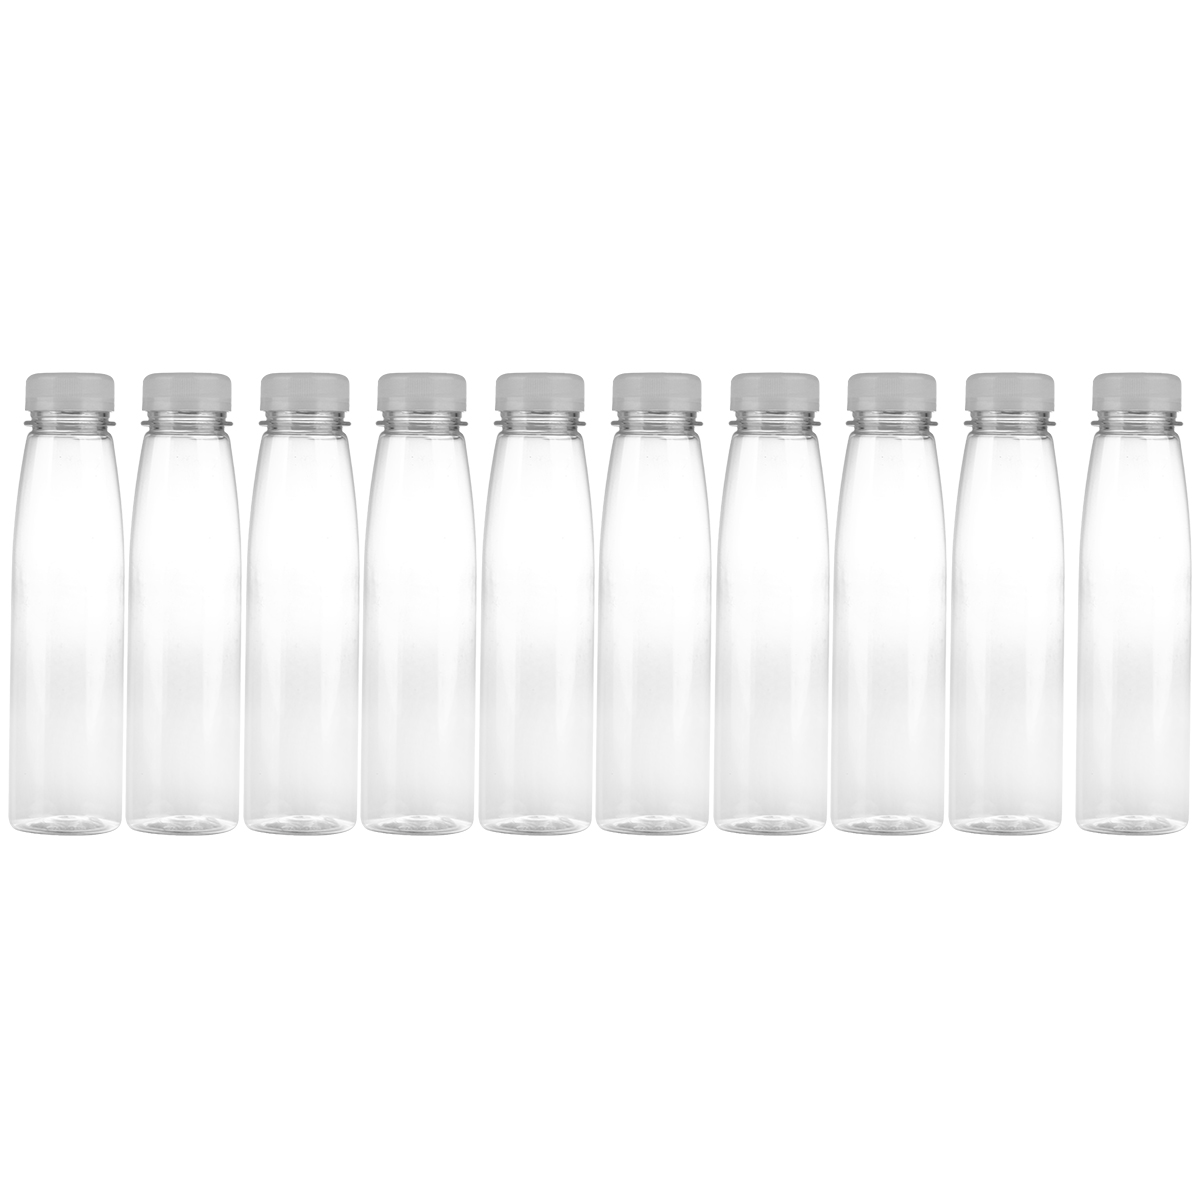 Hemoton 10PCS 330ml Empty Storage Containers Clear PET Bottles Plastic Beverage Drink Bottle Juice Bottle Jar with Lids (Random Color Caps) - image 2 of 6